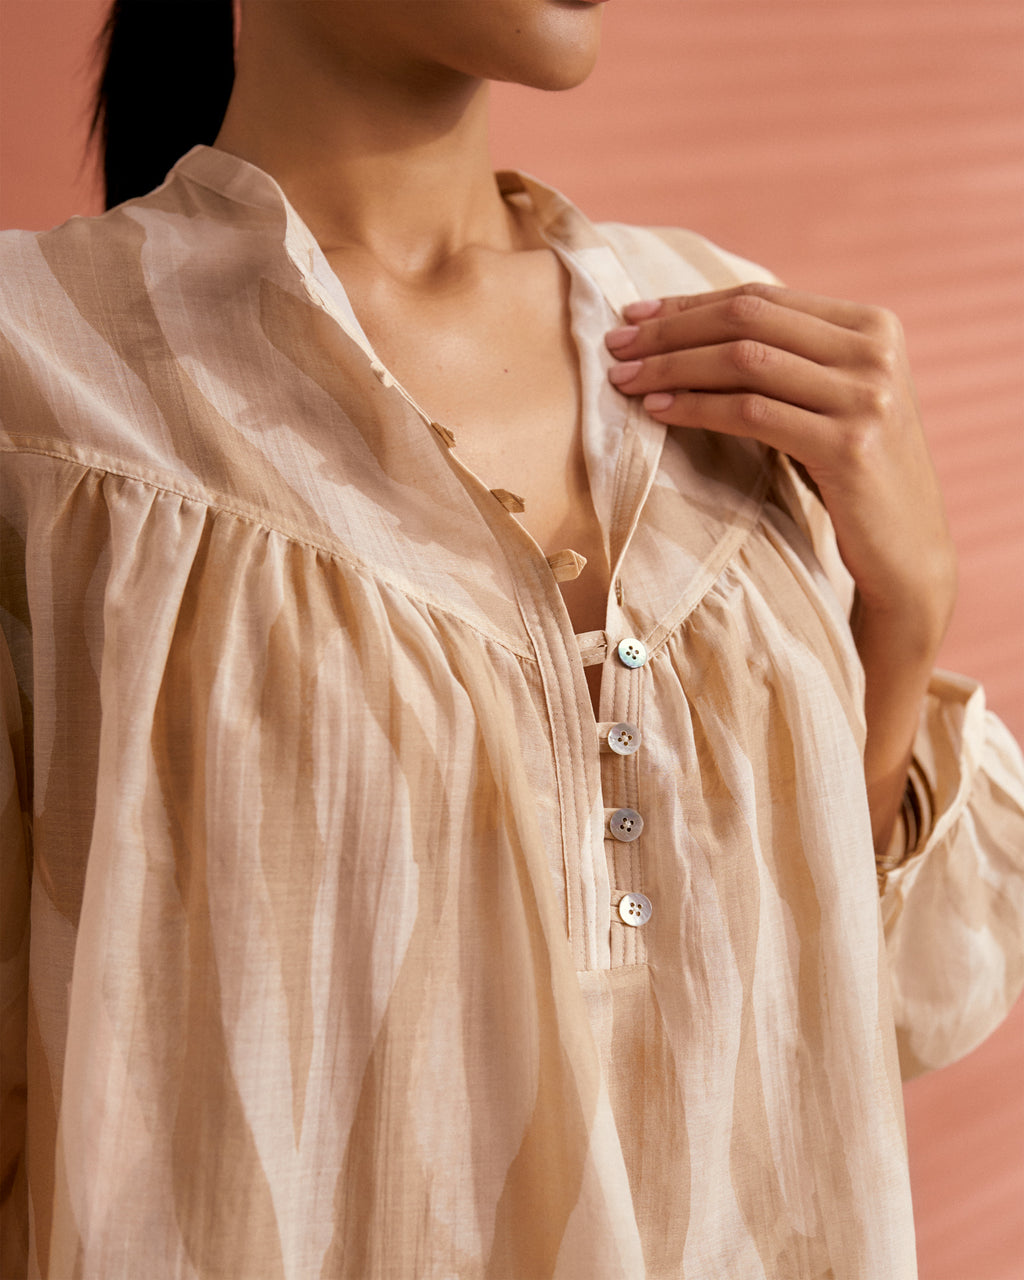 Printed Cotton Silk Voile Baja Shirt - Deep Neckline With Botton Closure - Beige Off White Maxi Zebra